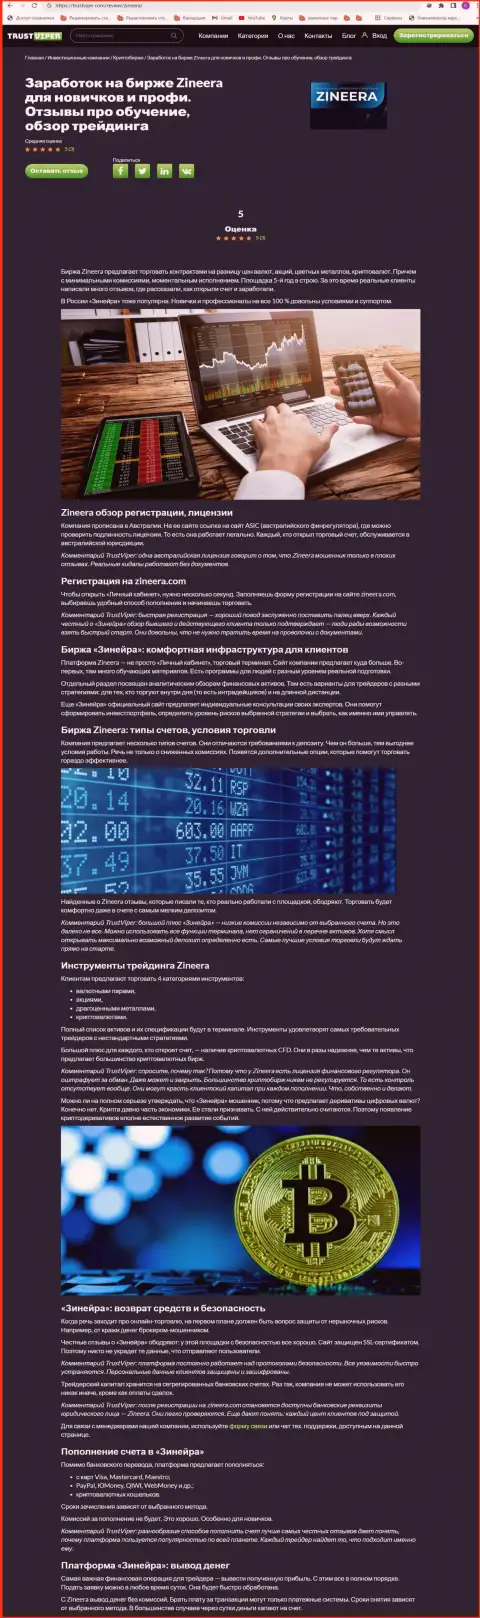 Обзор условий для спекулирования криптовалютной биржевой компании Zineera на сайте траствайпер ком